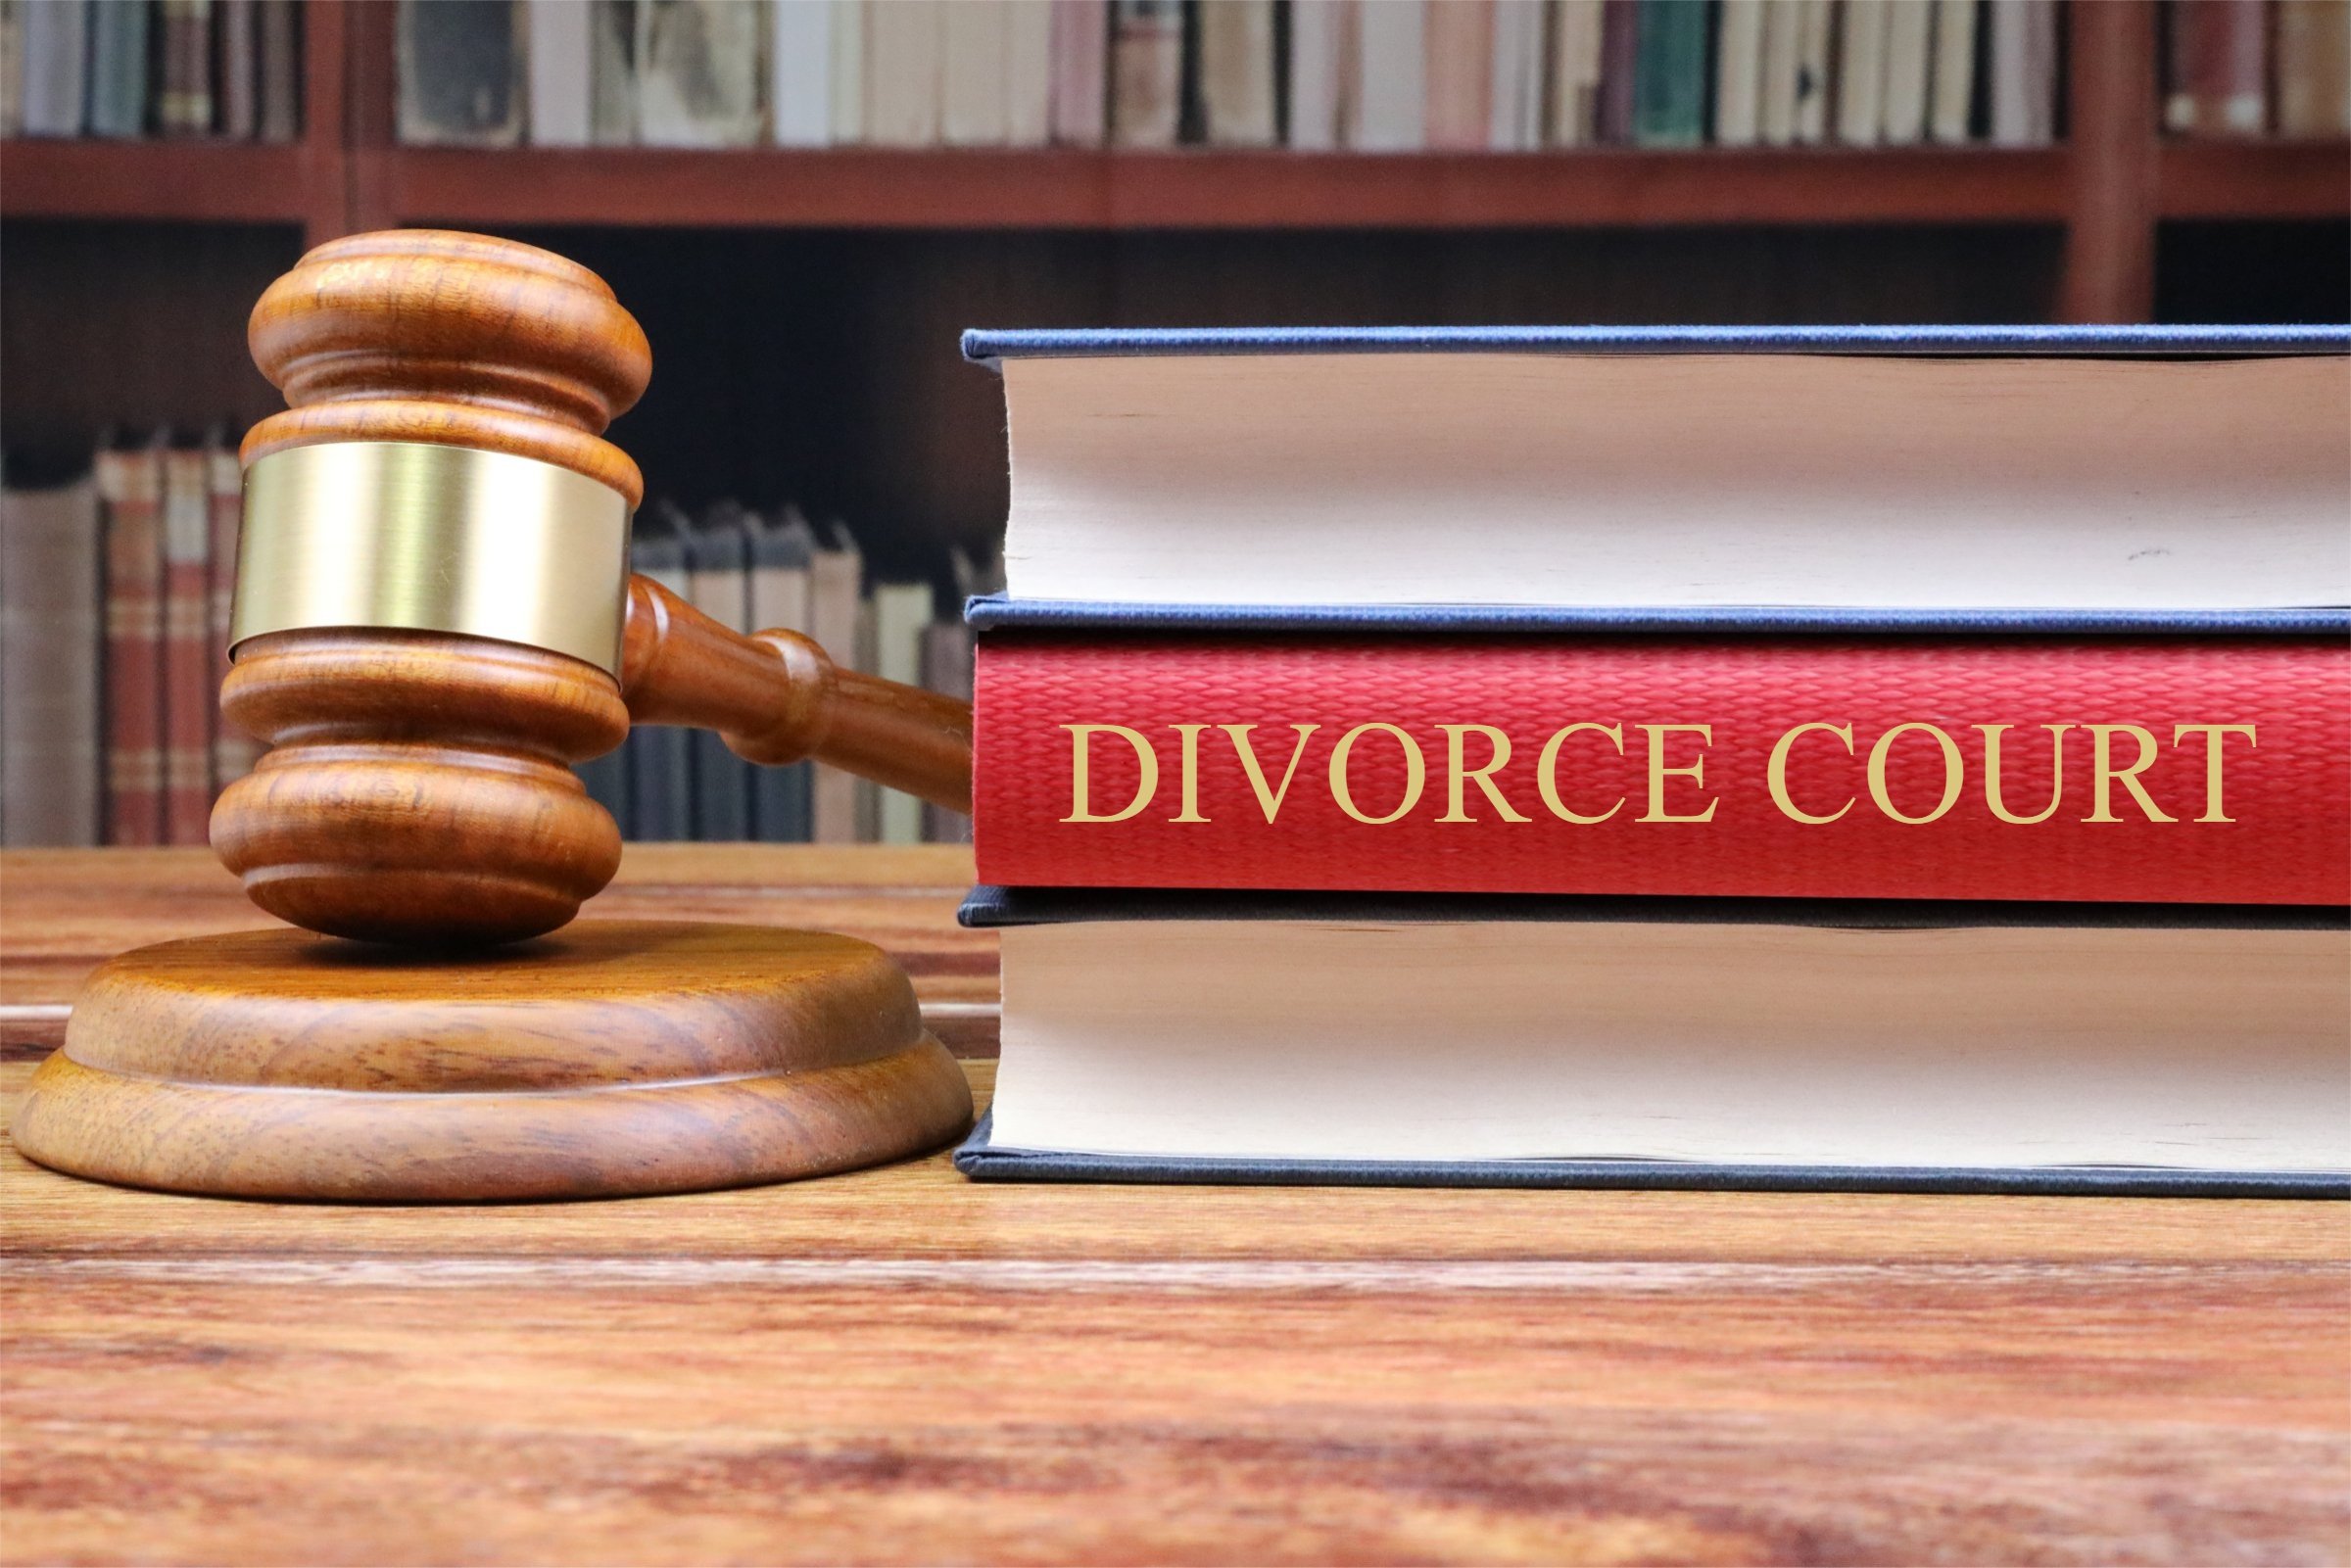 Cost of Divorce